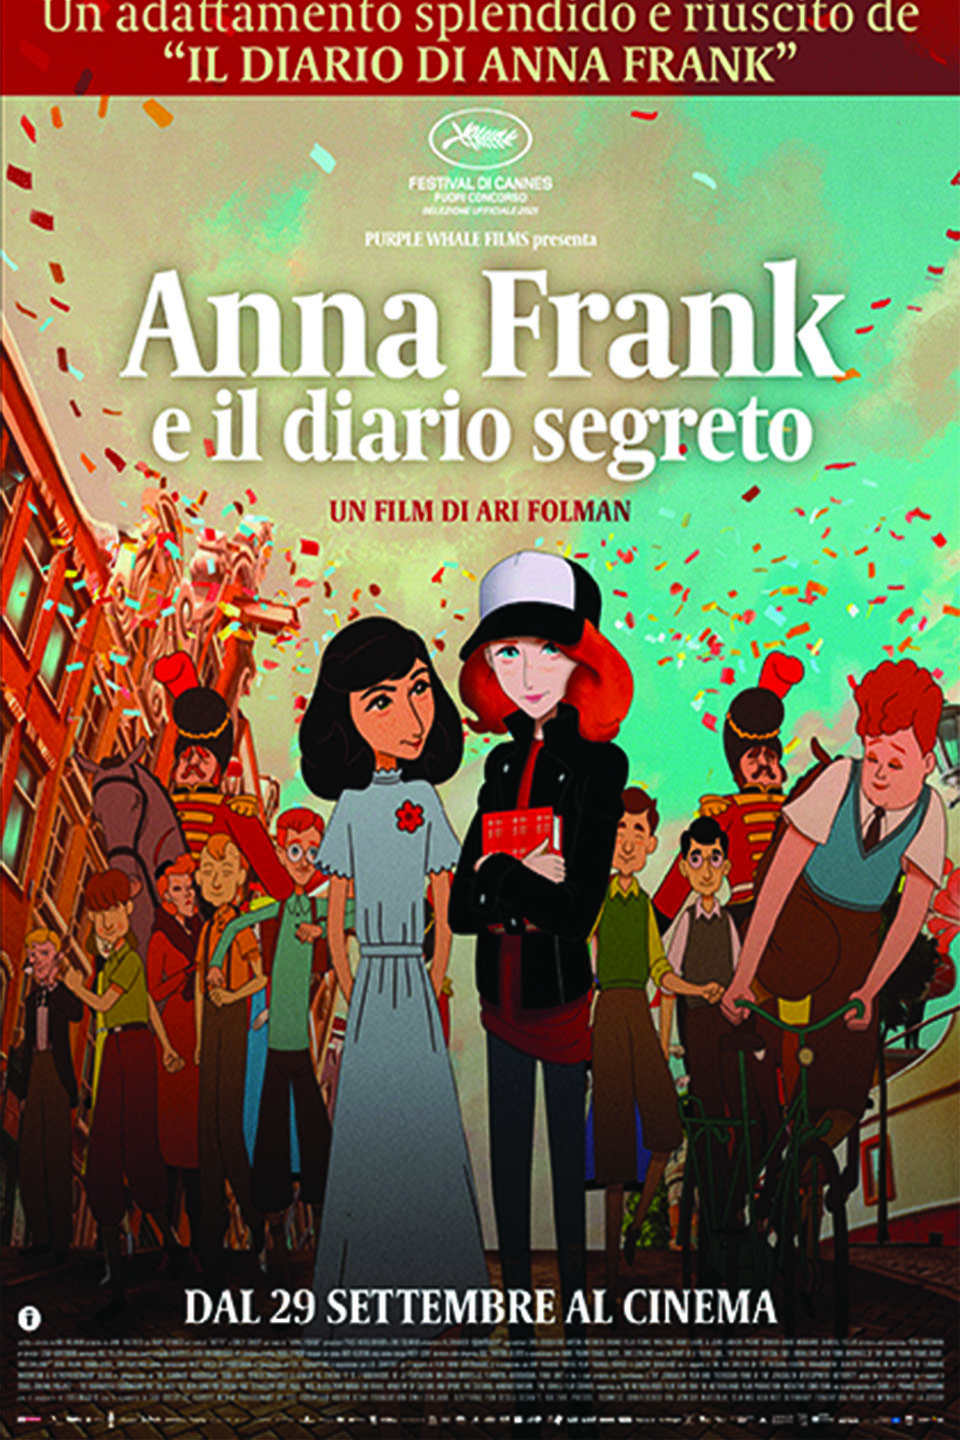 ANNA FRANK E IL DIARIO NASCOSTO